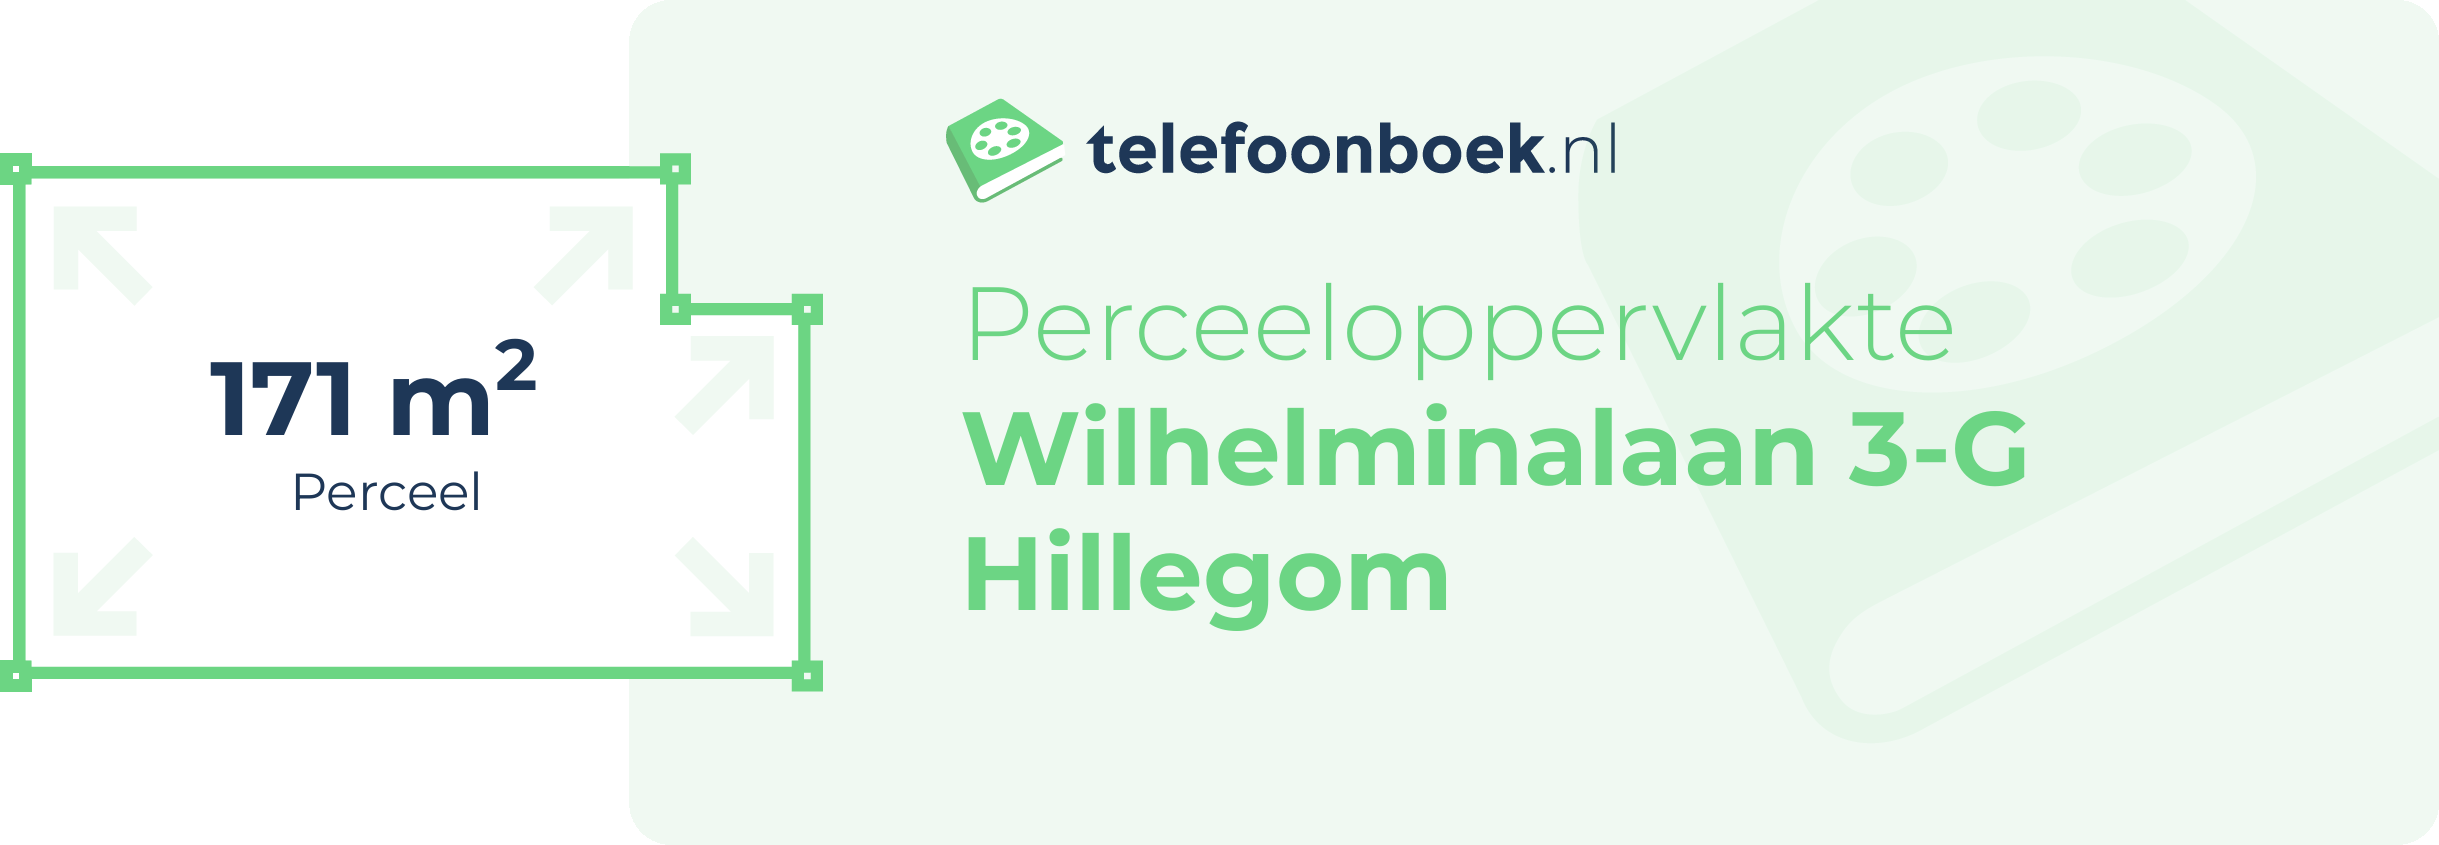 Perceeloppervlakte Wilhelminalaan 3-G Hillegom